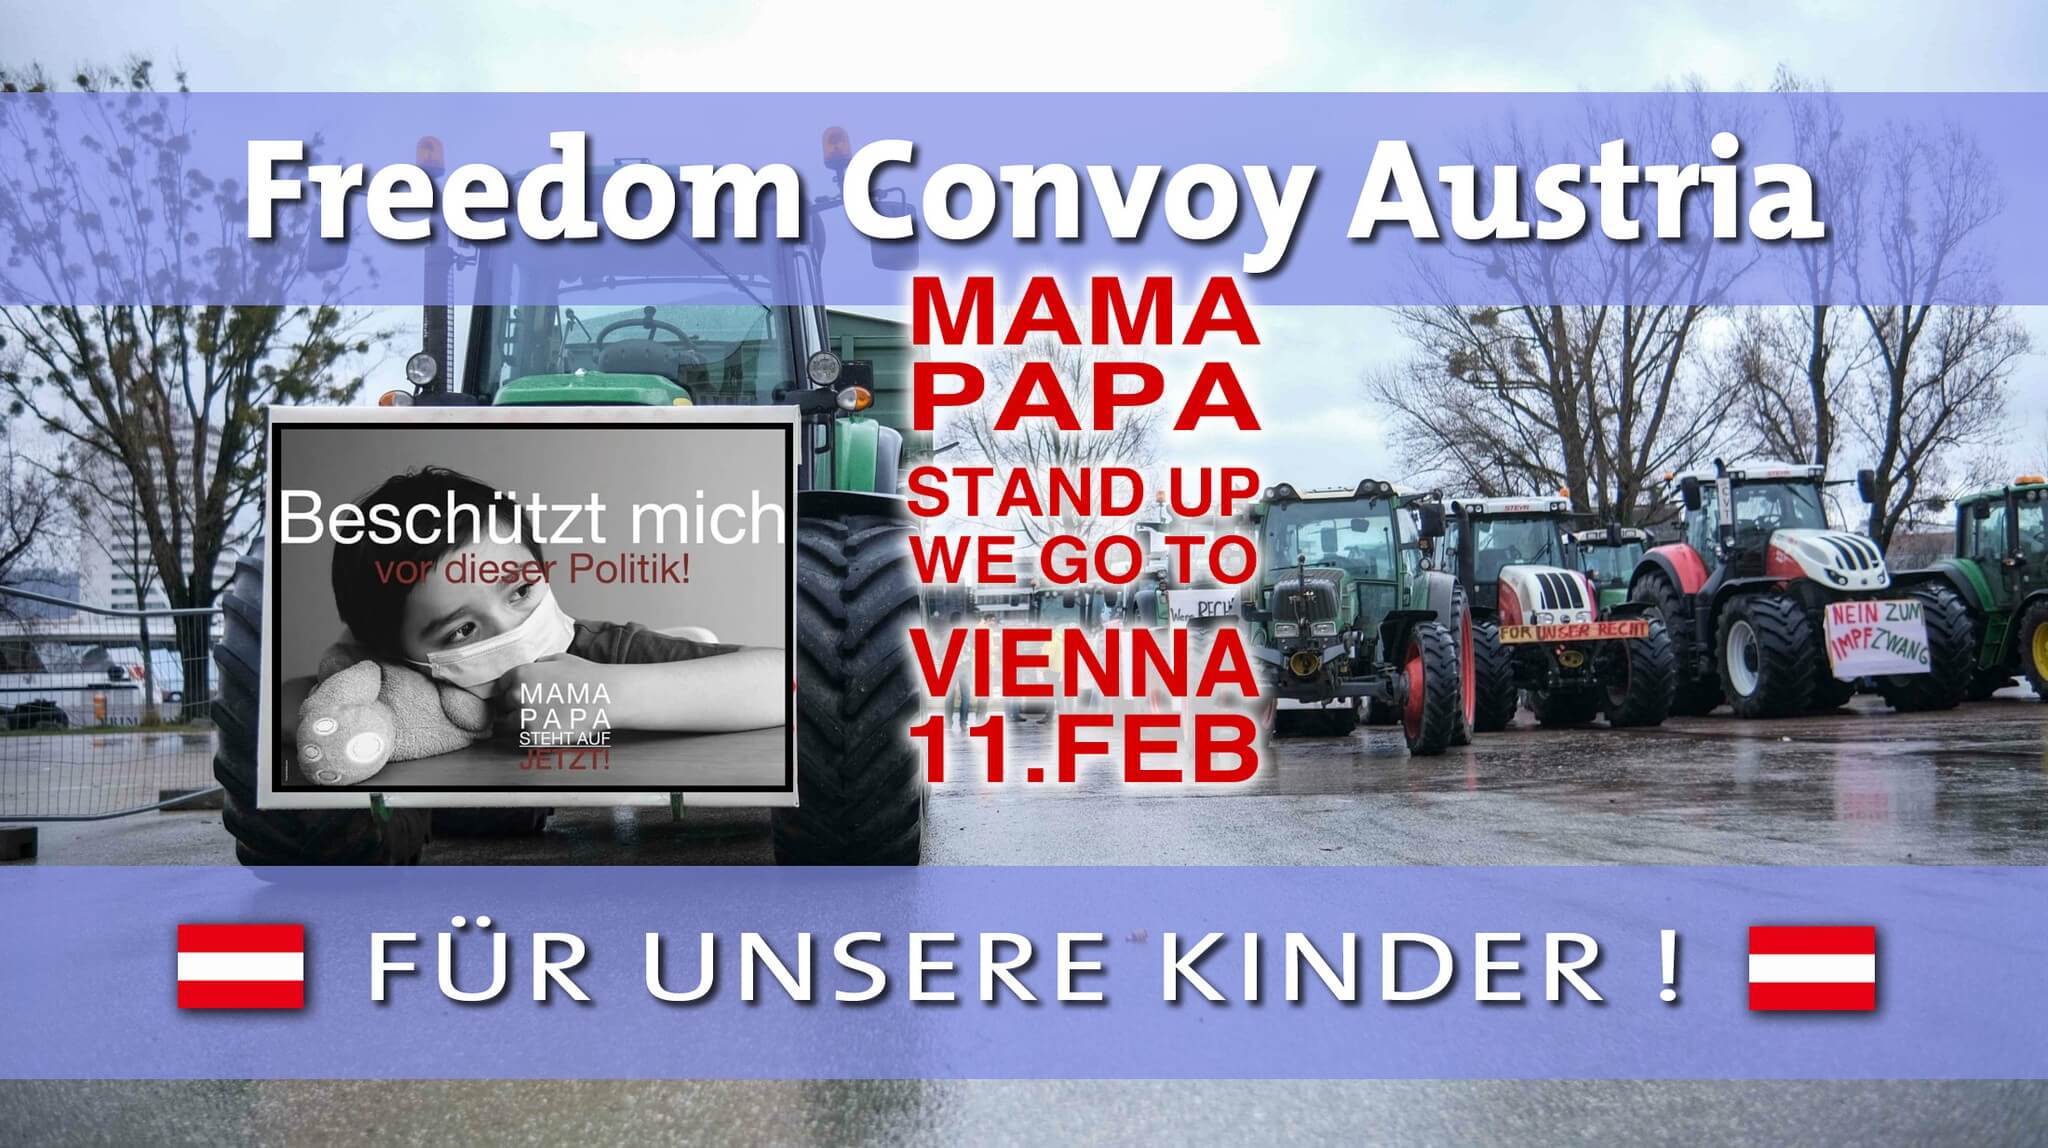 Convoy de la libertad Austria